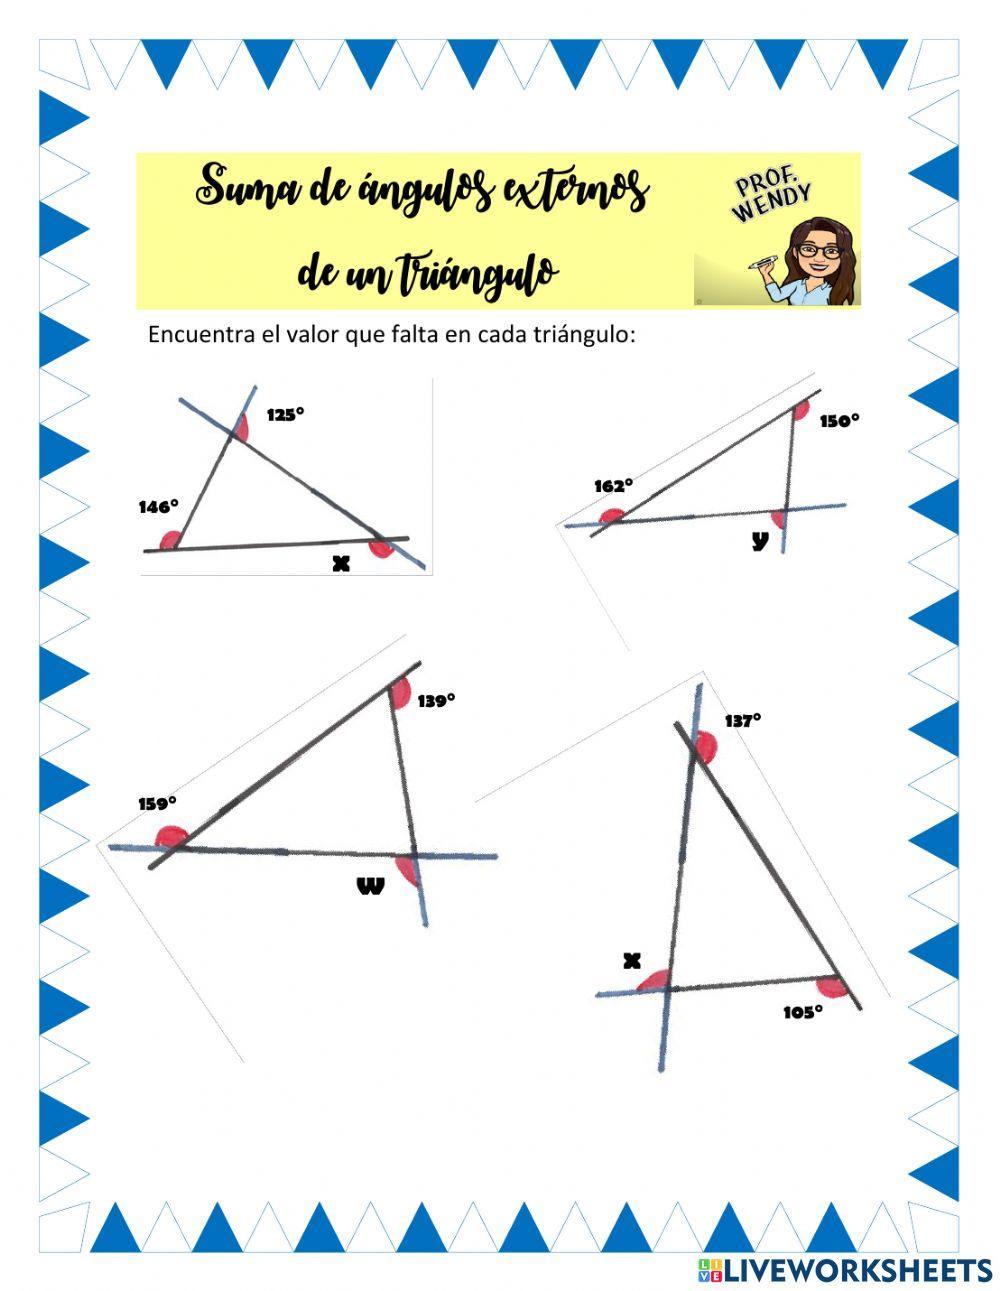 Suma de ángulos externos de un triángulo